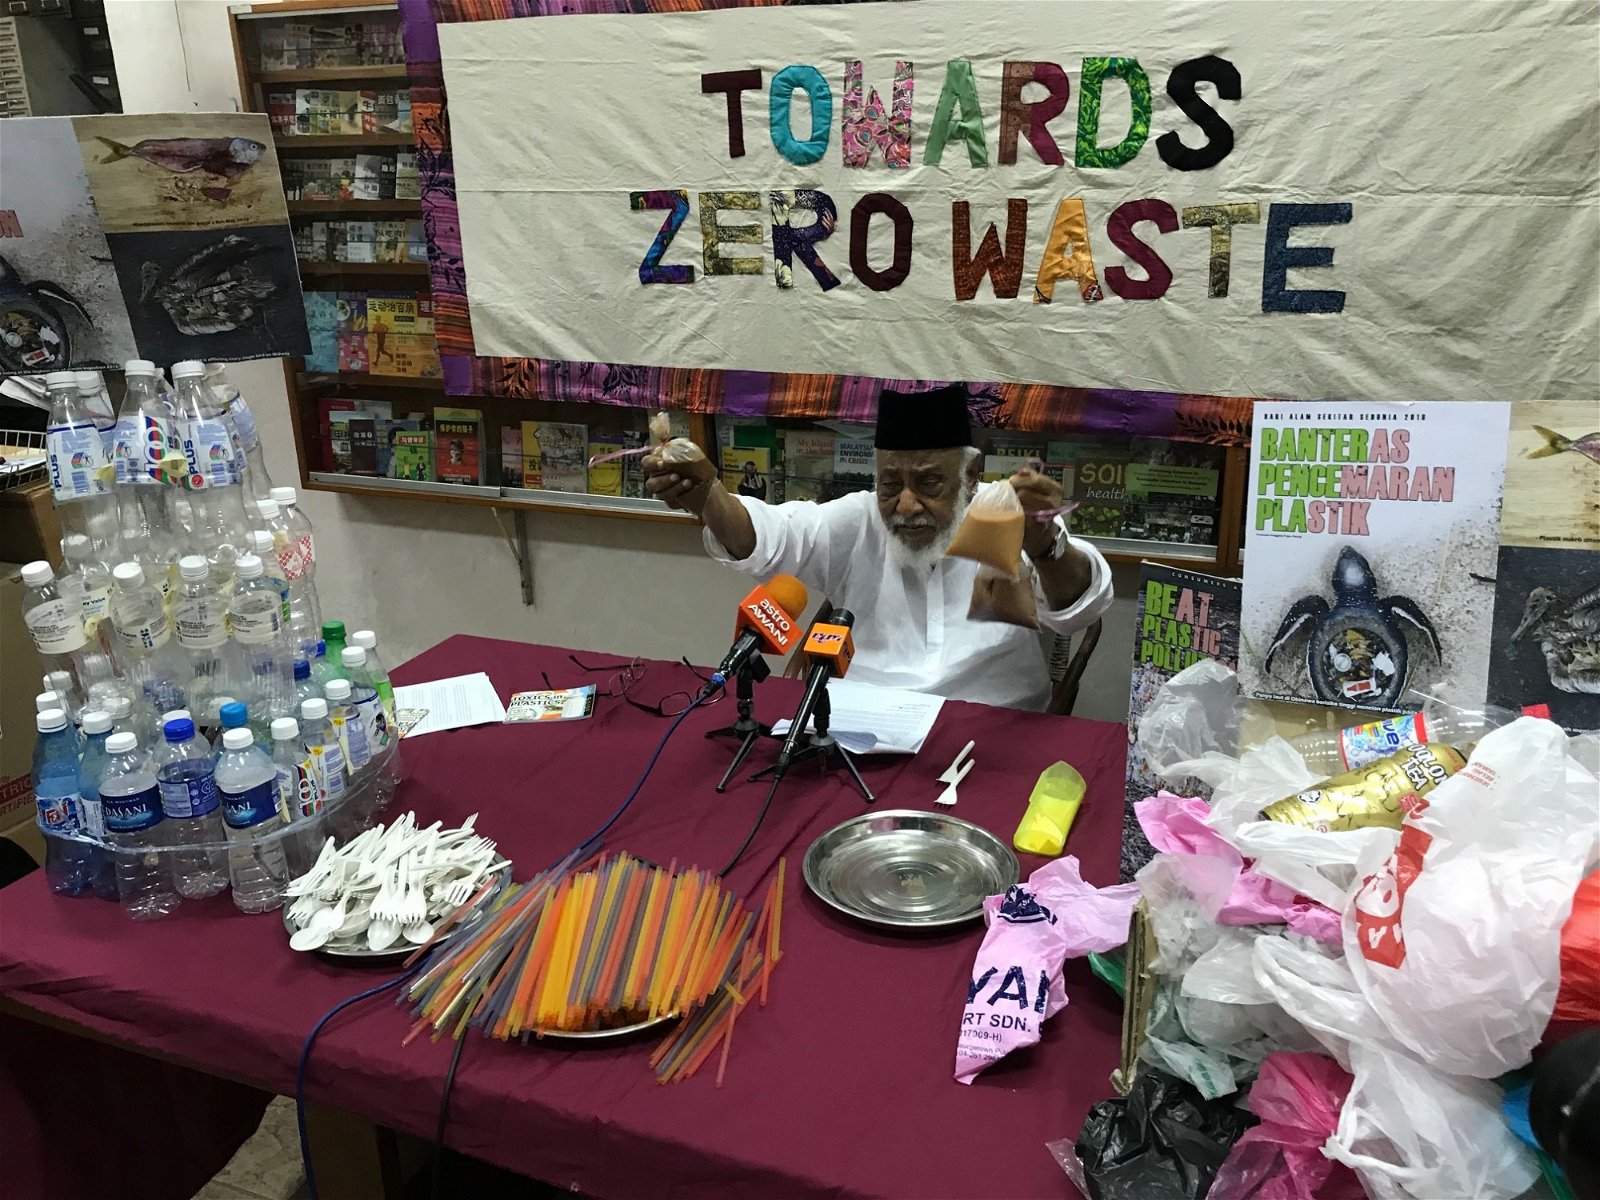 莫哈末依里斯在记者会上展示所有一次性塑料制成的产品，并 呼吁民众停止使用这些产品，避免生态与环境造成更大污染。